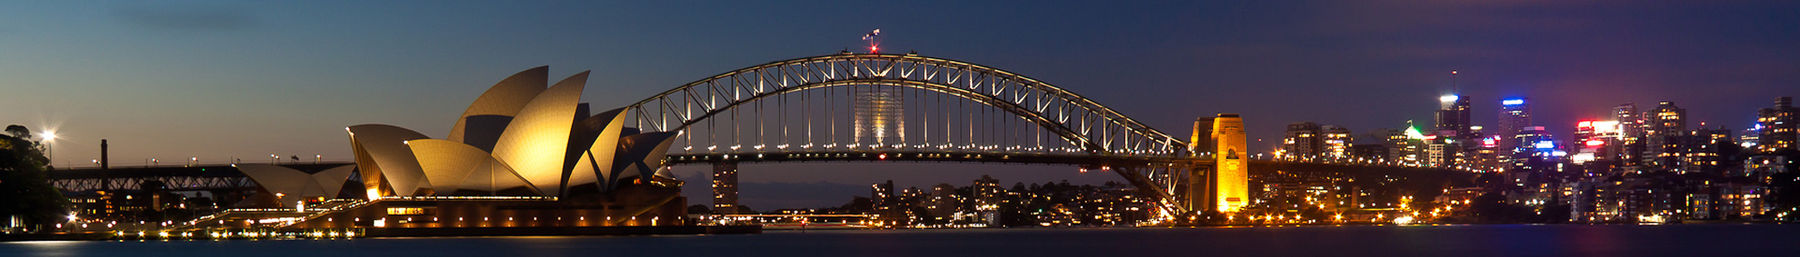 Sydney Harbour Banner.jpg